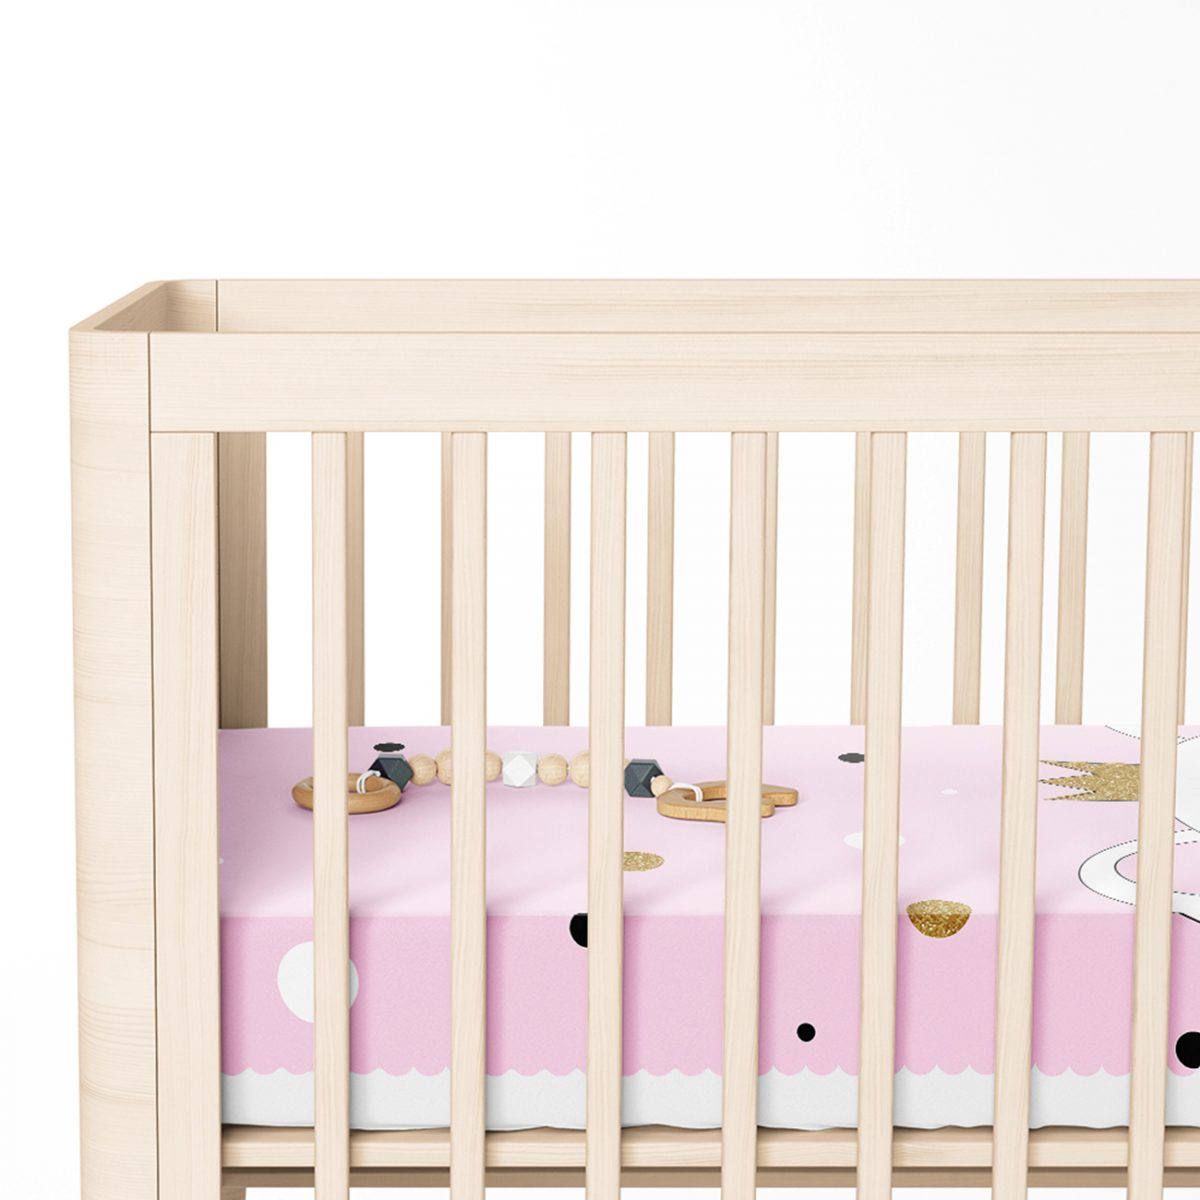 Renkli Puanlı Kedicik Desenli Bebek Odası Yatak Örtüsü Realhomes